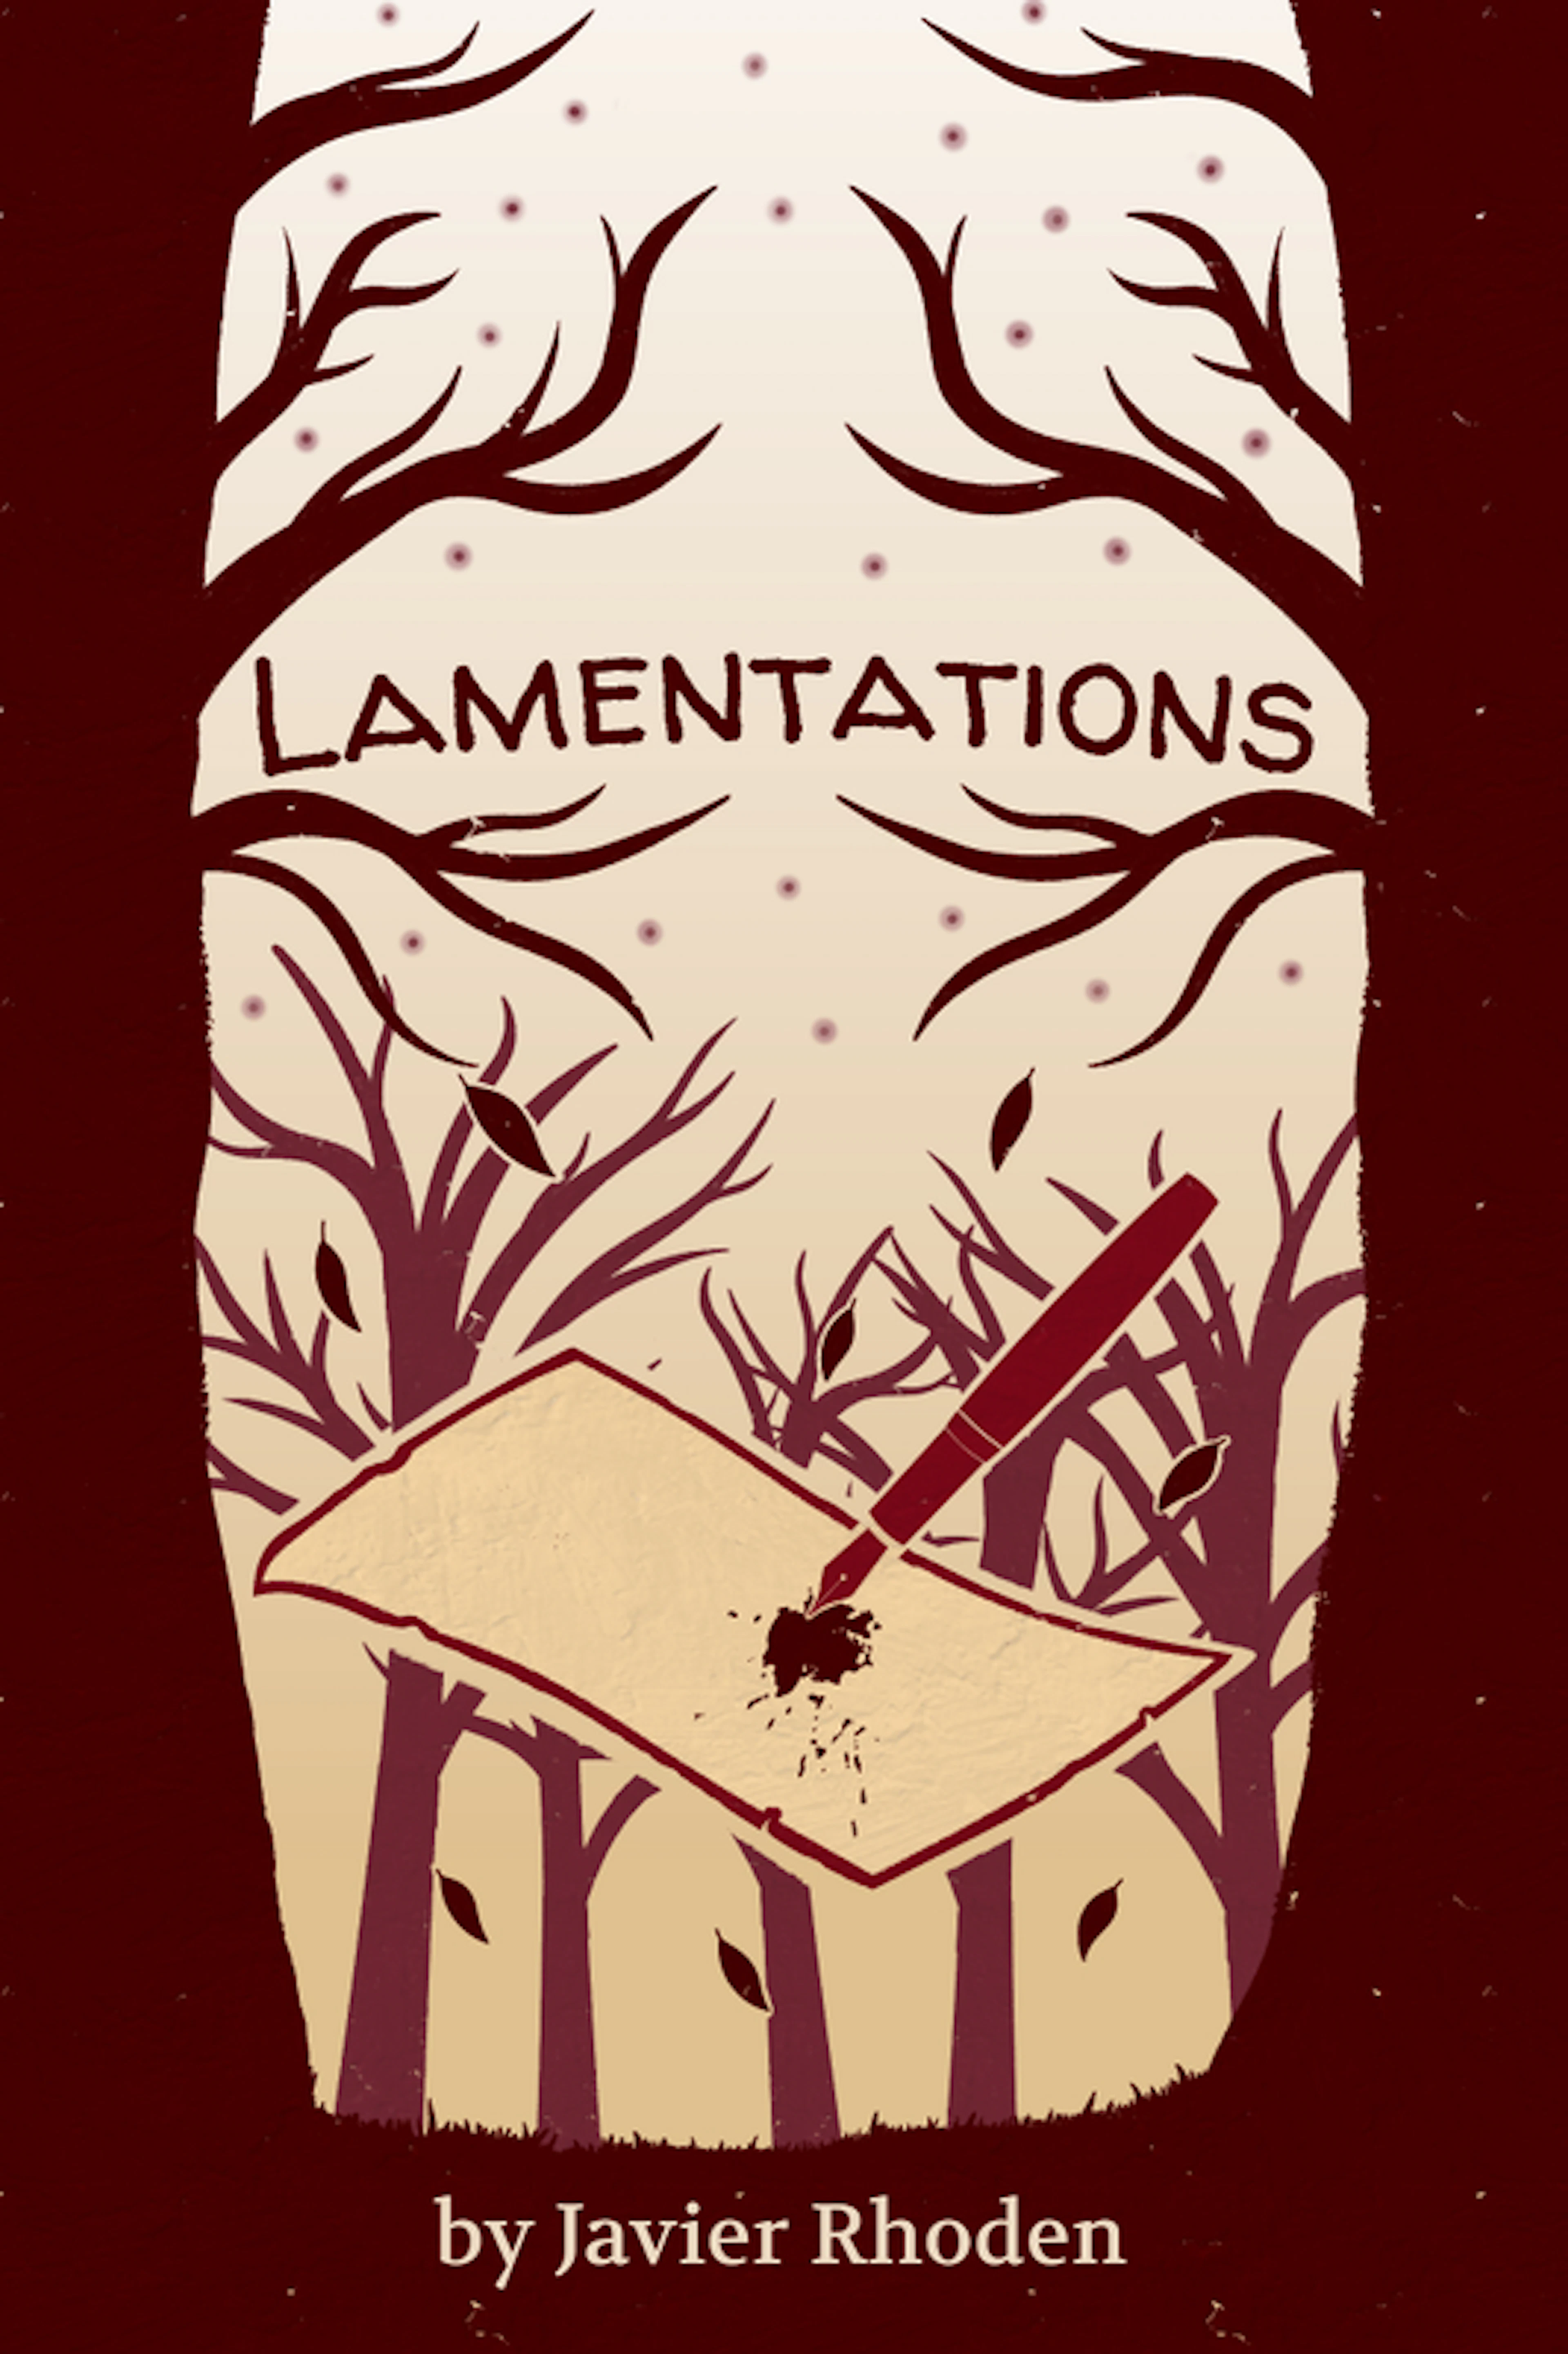 Lamentations by Javier Rhoden